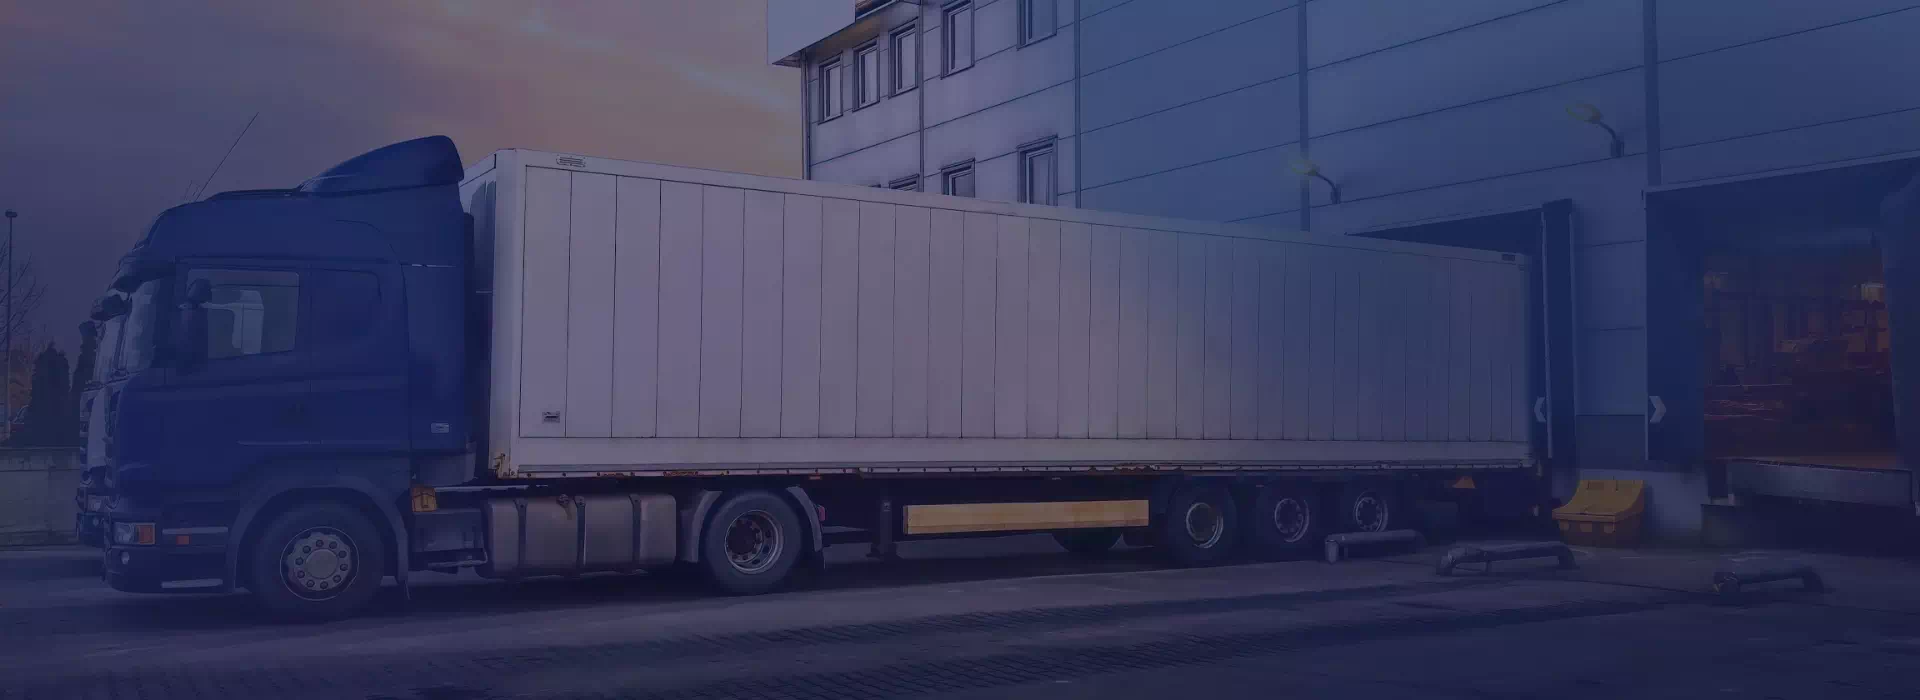 ciężarówka zaparkowana przy dokach